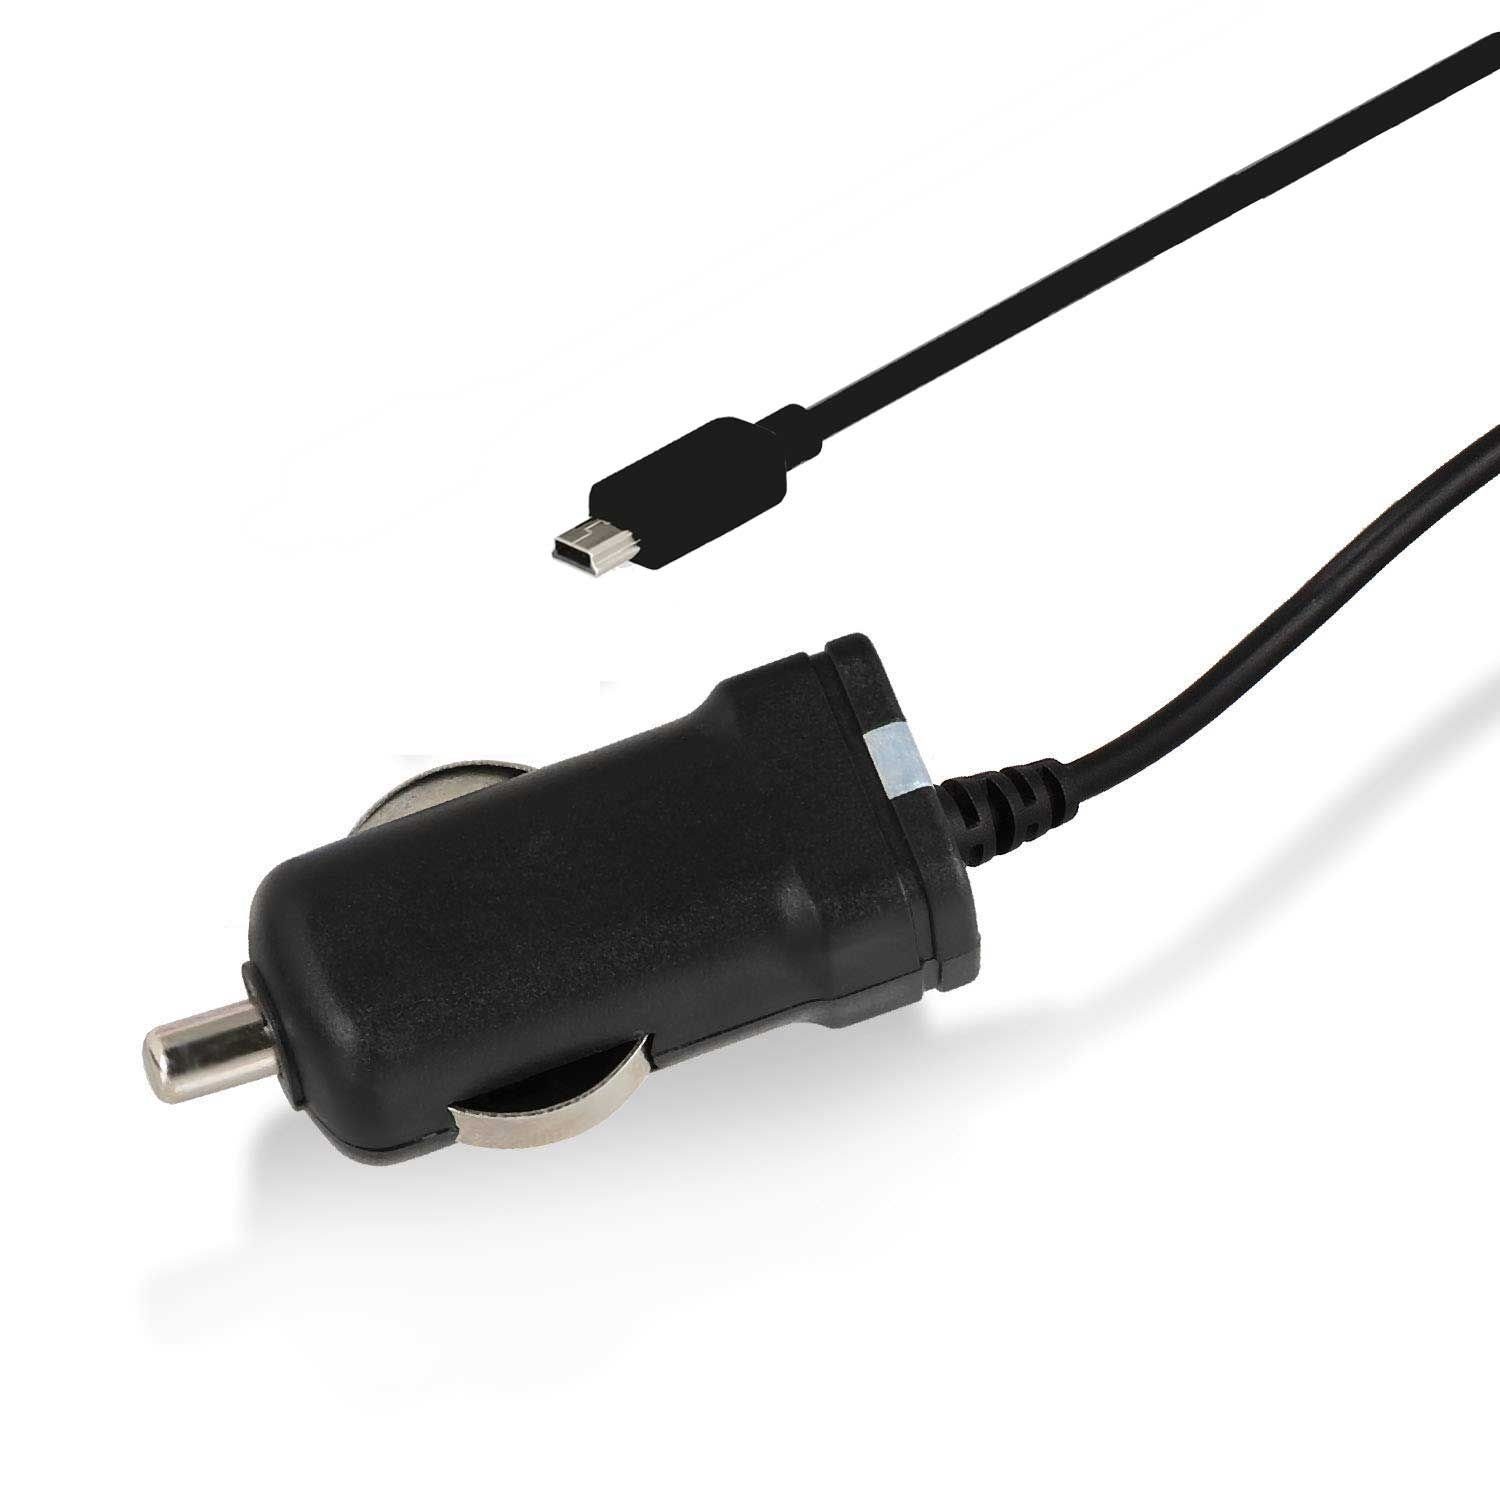 Wicked Chili 1m KFZ Ladekabel 100 TMC TMC LED-Funktionsanzeige integrierter Antenne Navi für NAVIGON Mini cm, zu mit Auto-Adapter und Antenne USB, Gerät Zigarettenanzünder-Stecker mit